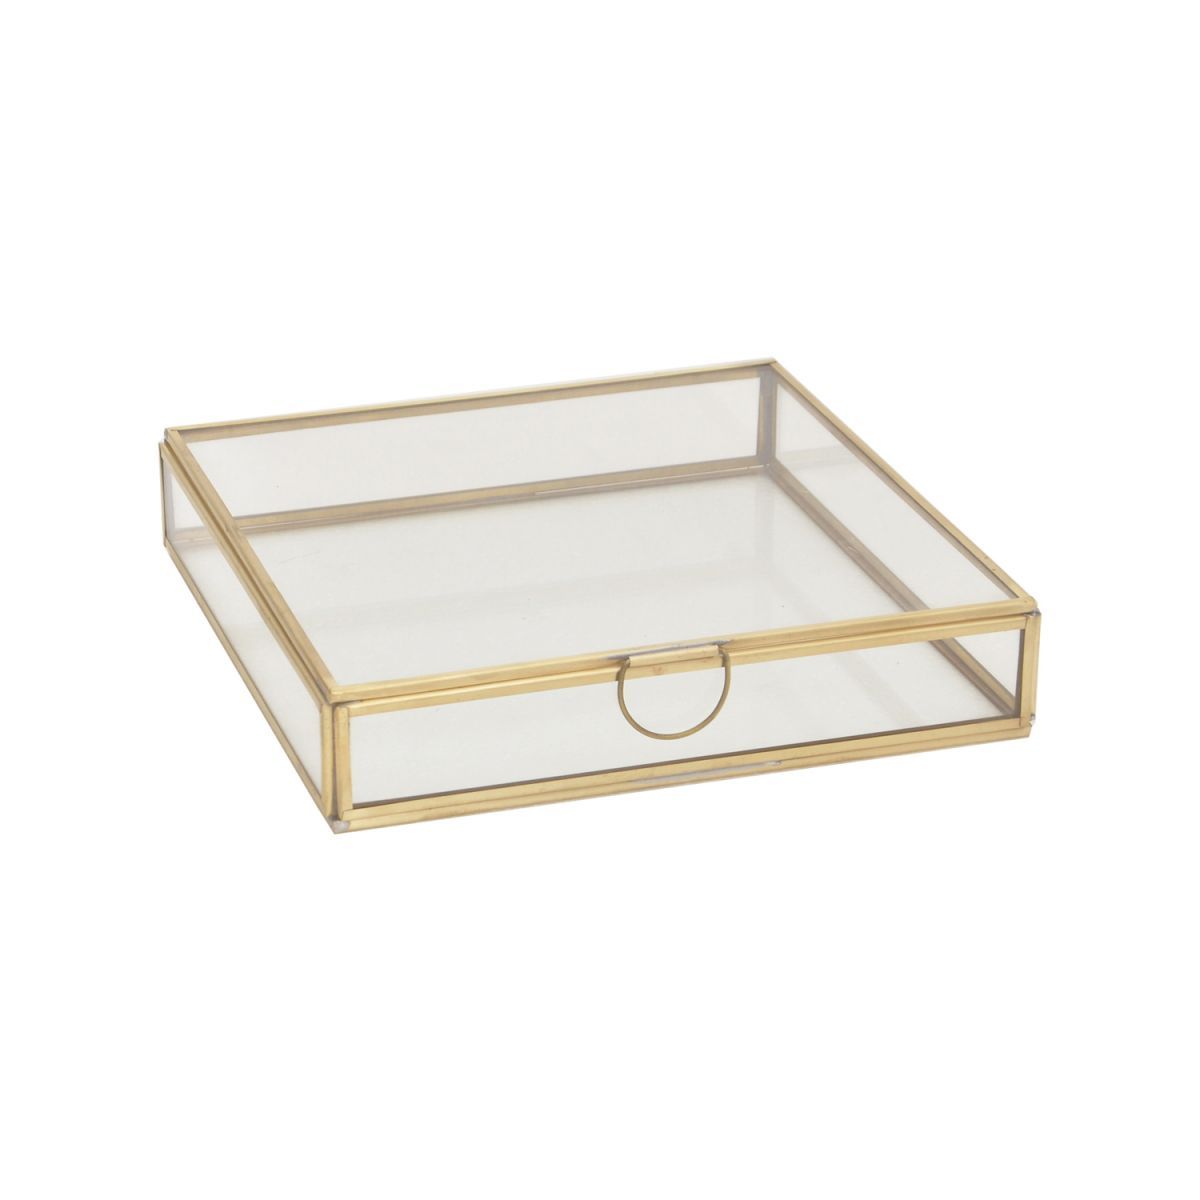 storagebox glass brass shade square low shape 20x20x4cm